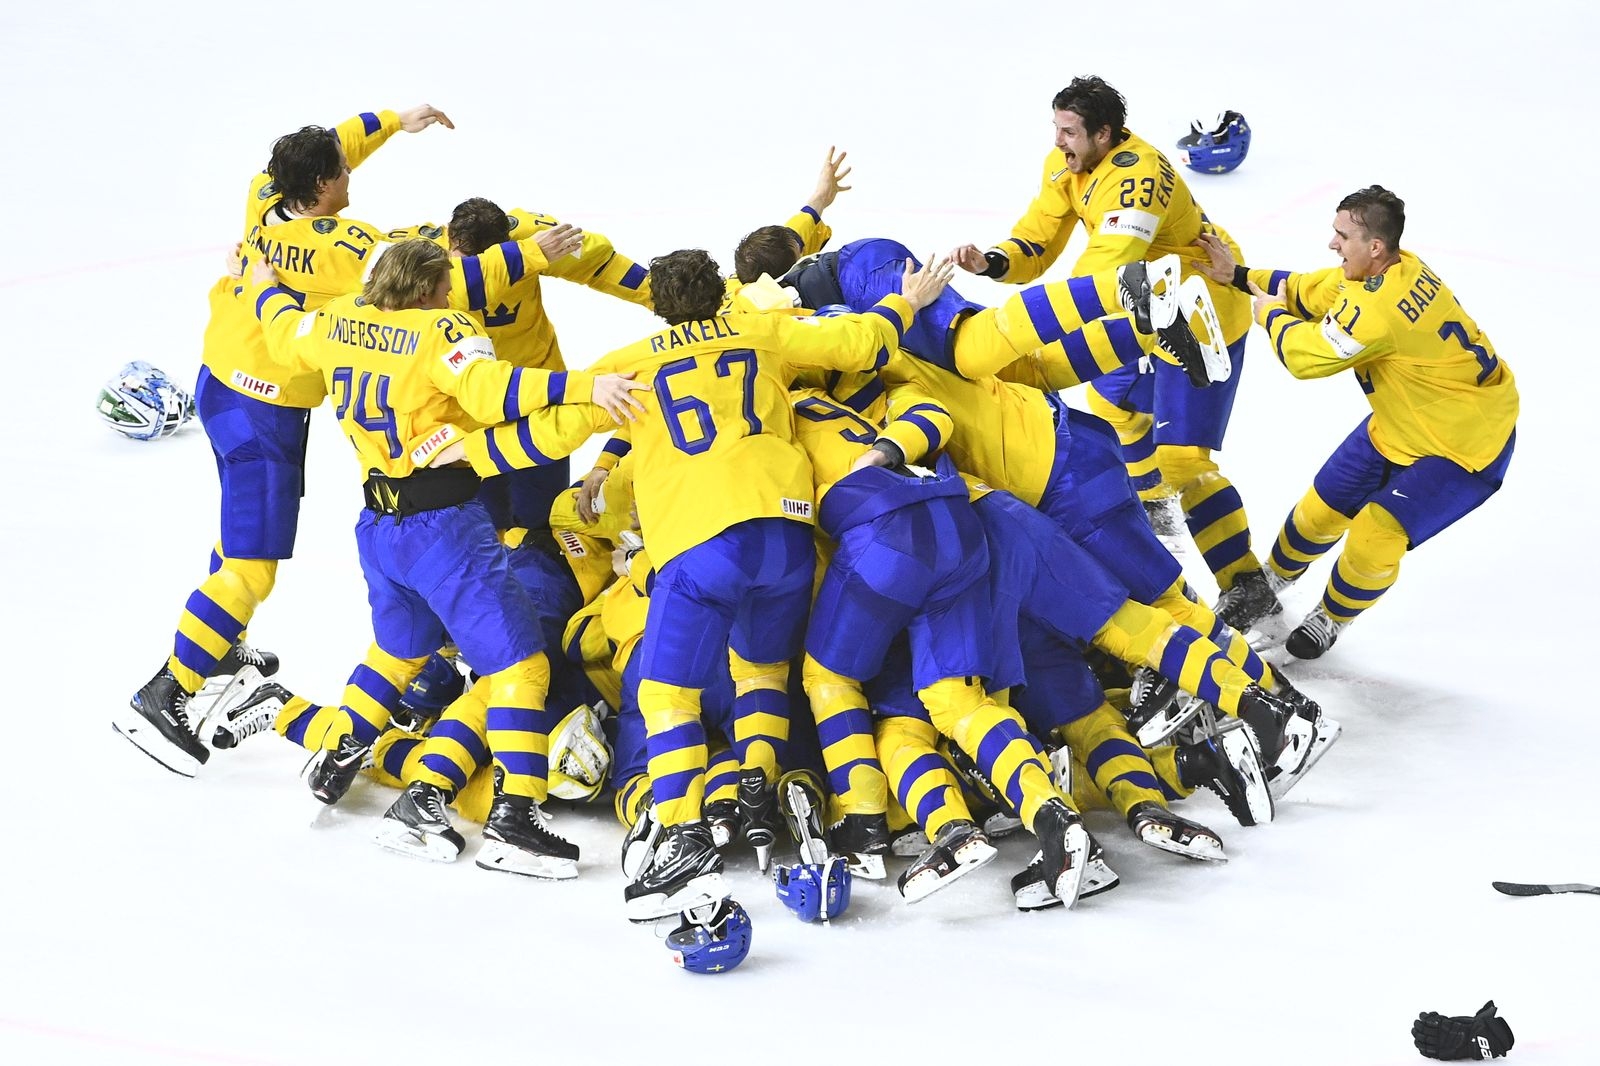 KÖPENHAMN 20180520
Sverige jublar efter segern i finalen i ishockey-VM mellan Sverige och Schweiz i Royal Arena.
Foto: Claudio Bresciani / TT / Kod 10090 ***Bilden ingår i SPORTPAKETET. För övriga BETALBILD***